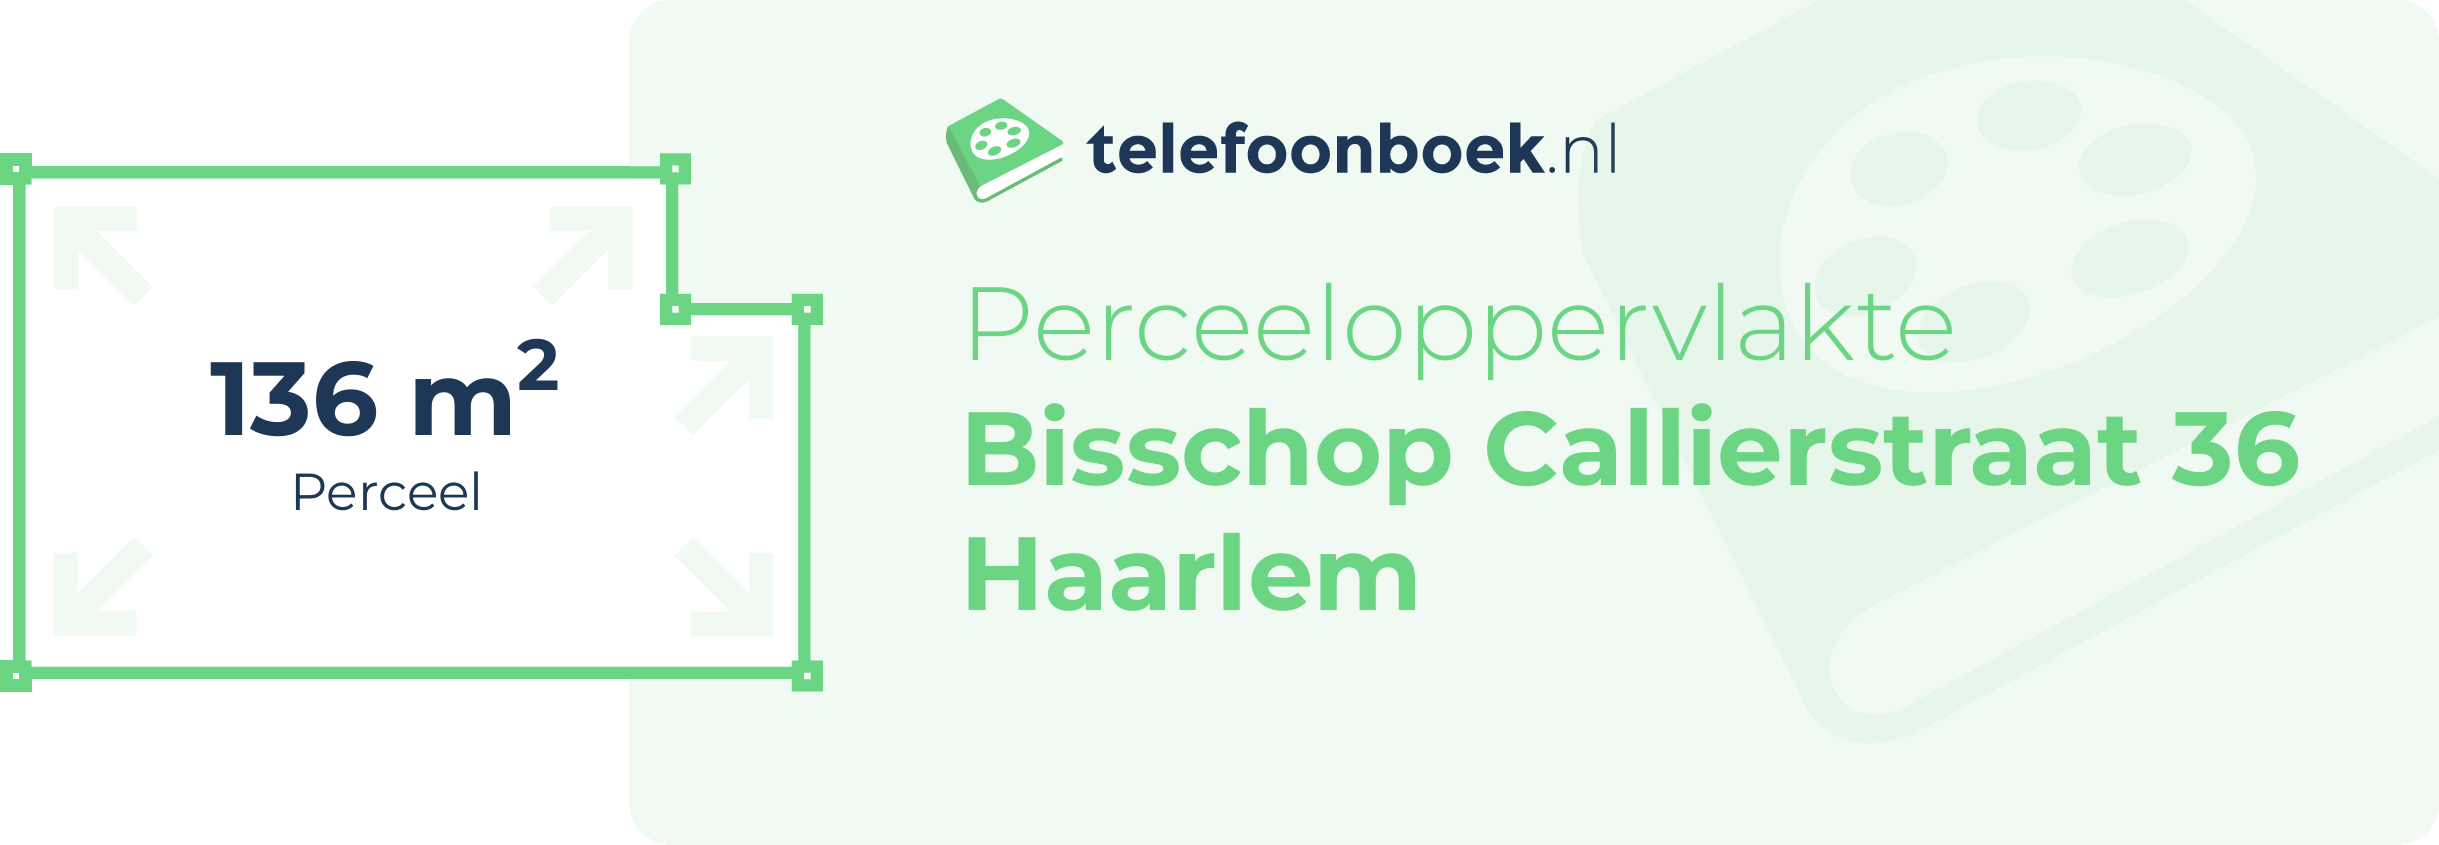 Perceeloppervlakte Bisschop Callierstraat 36 Haarlem